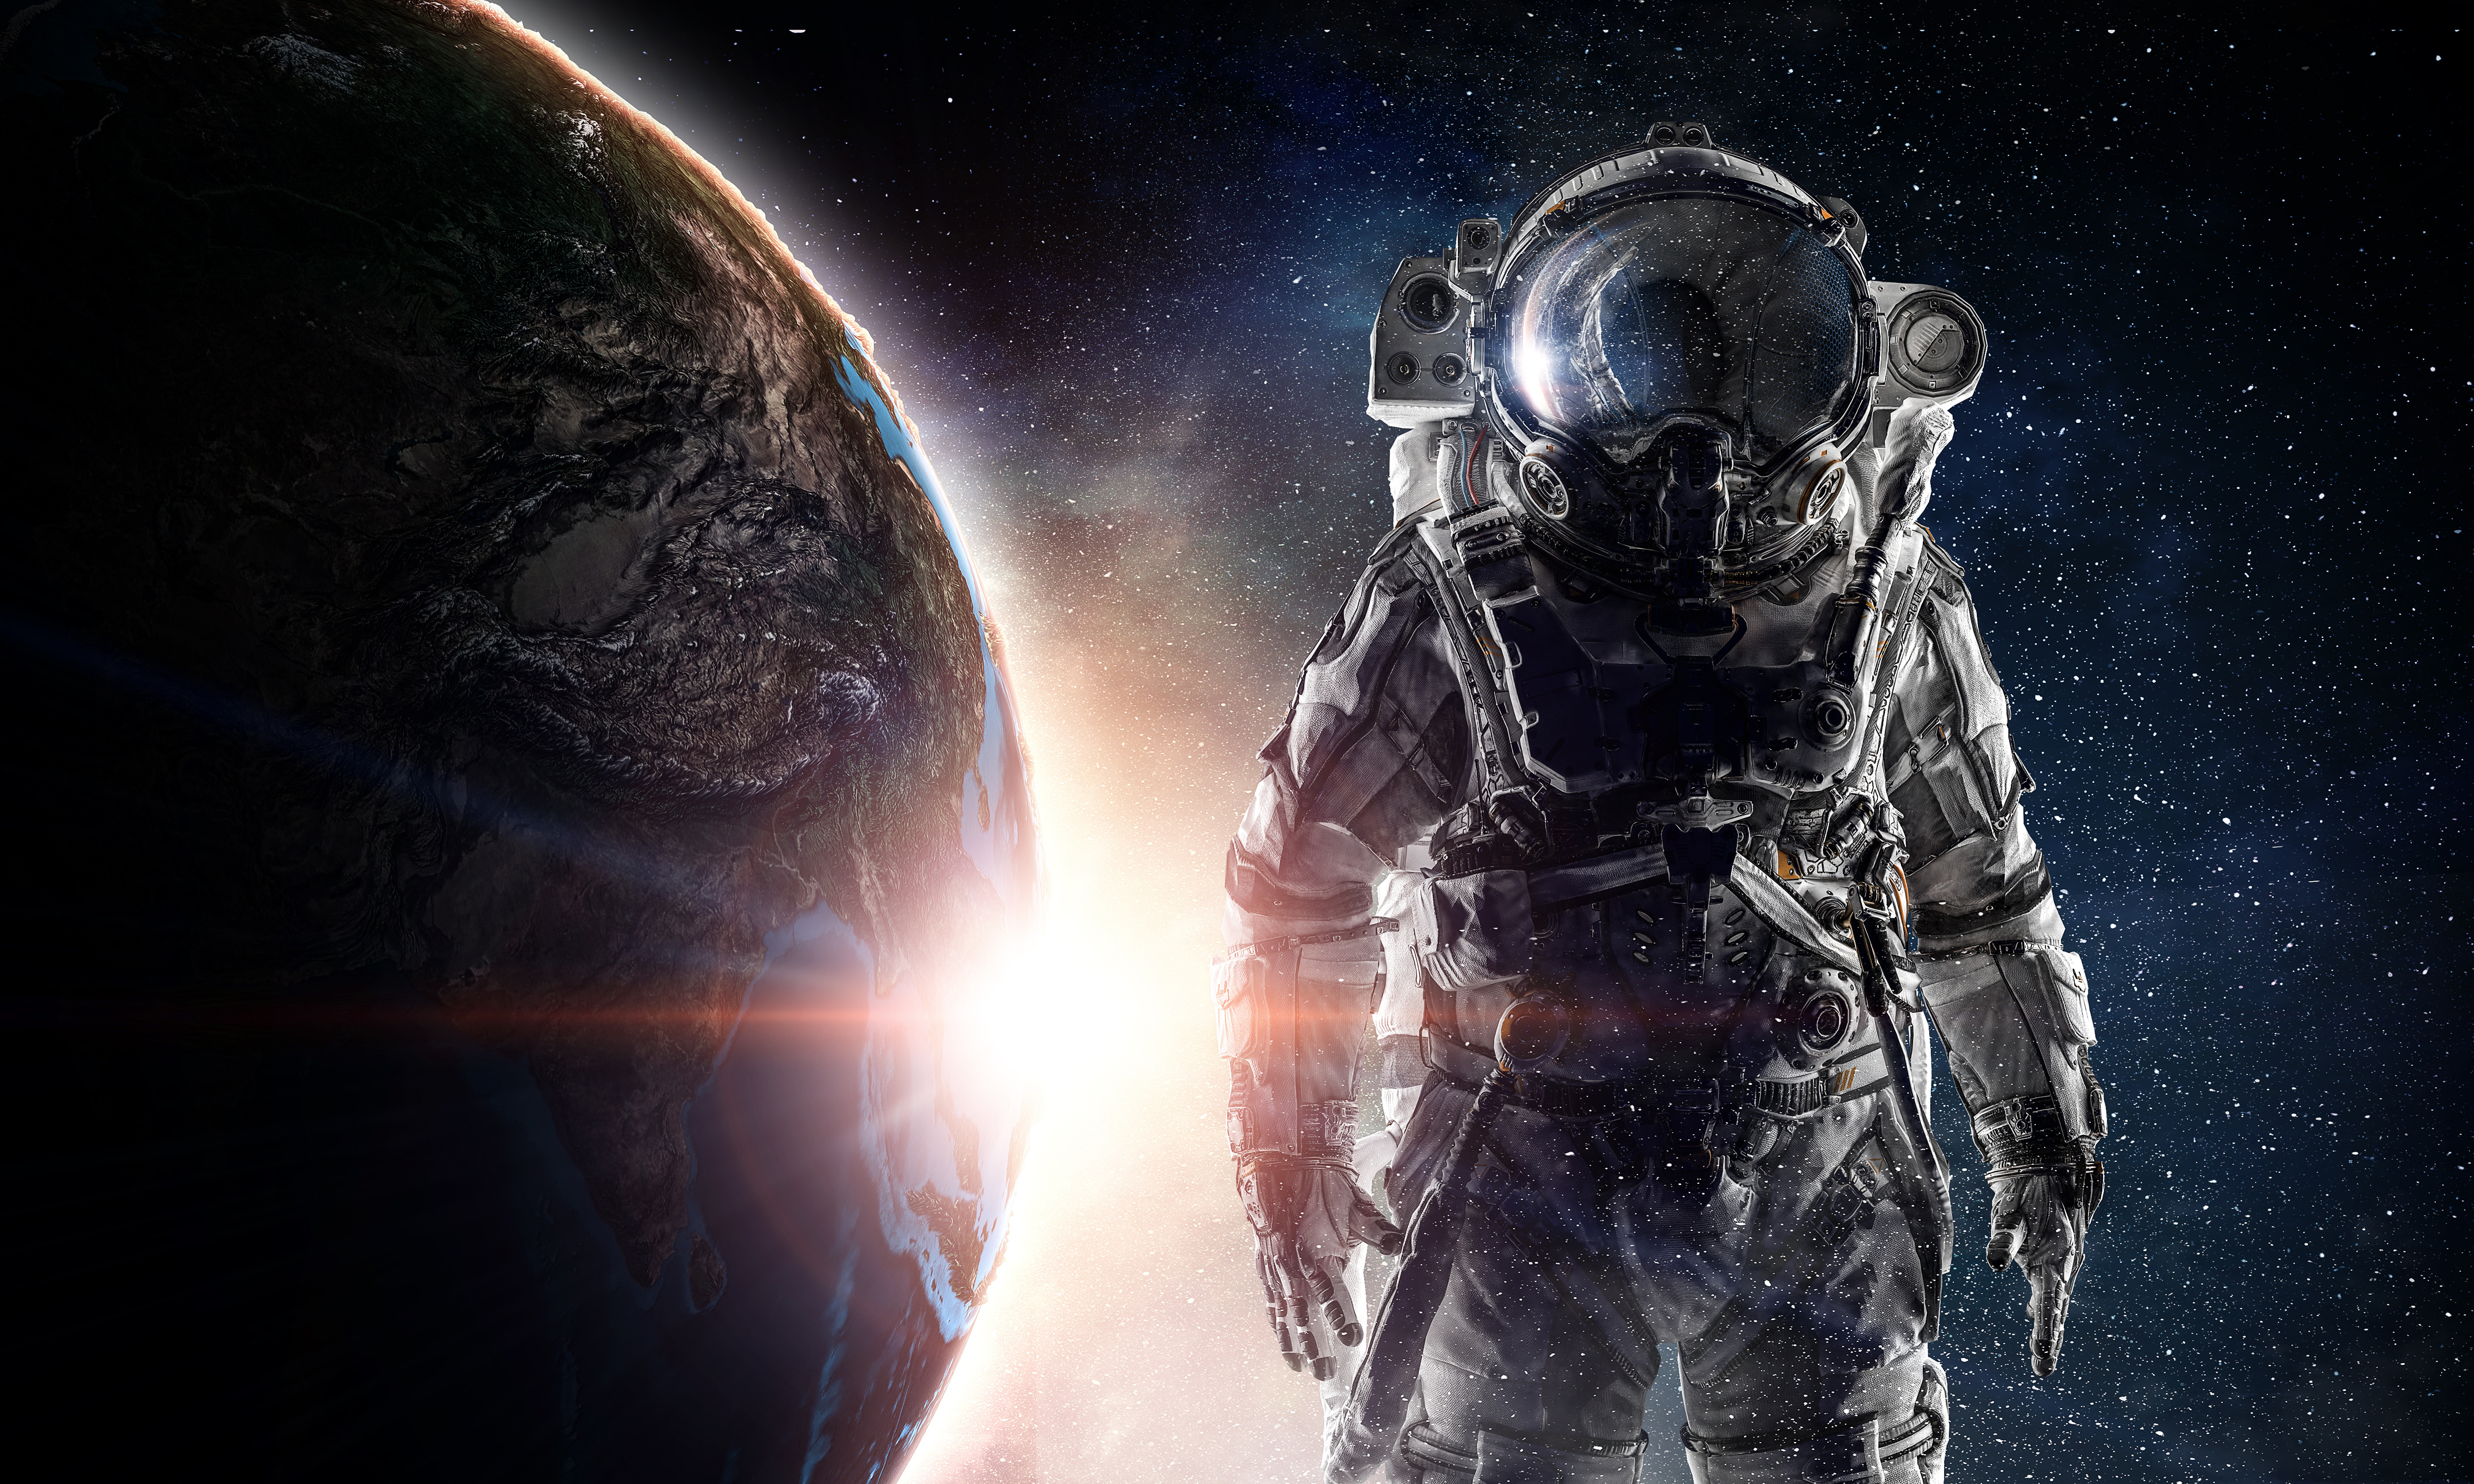 fond d'écran astronauta,espace,oeuvre de cg,cosmos,jeu d'aventure d'action,compositing numérique